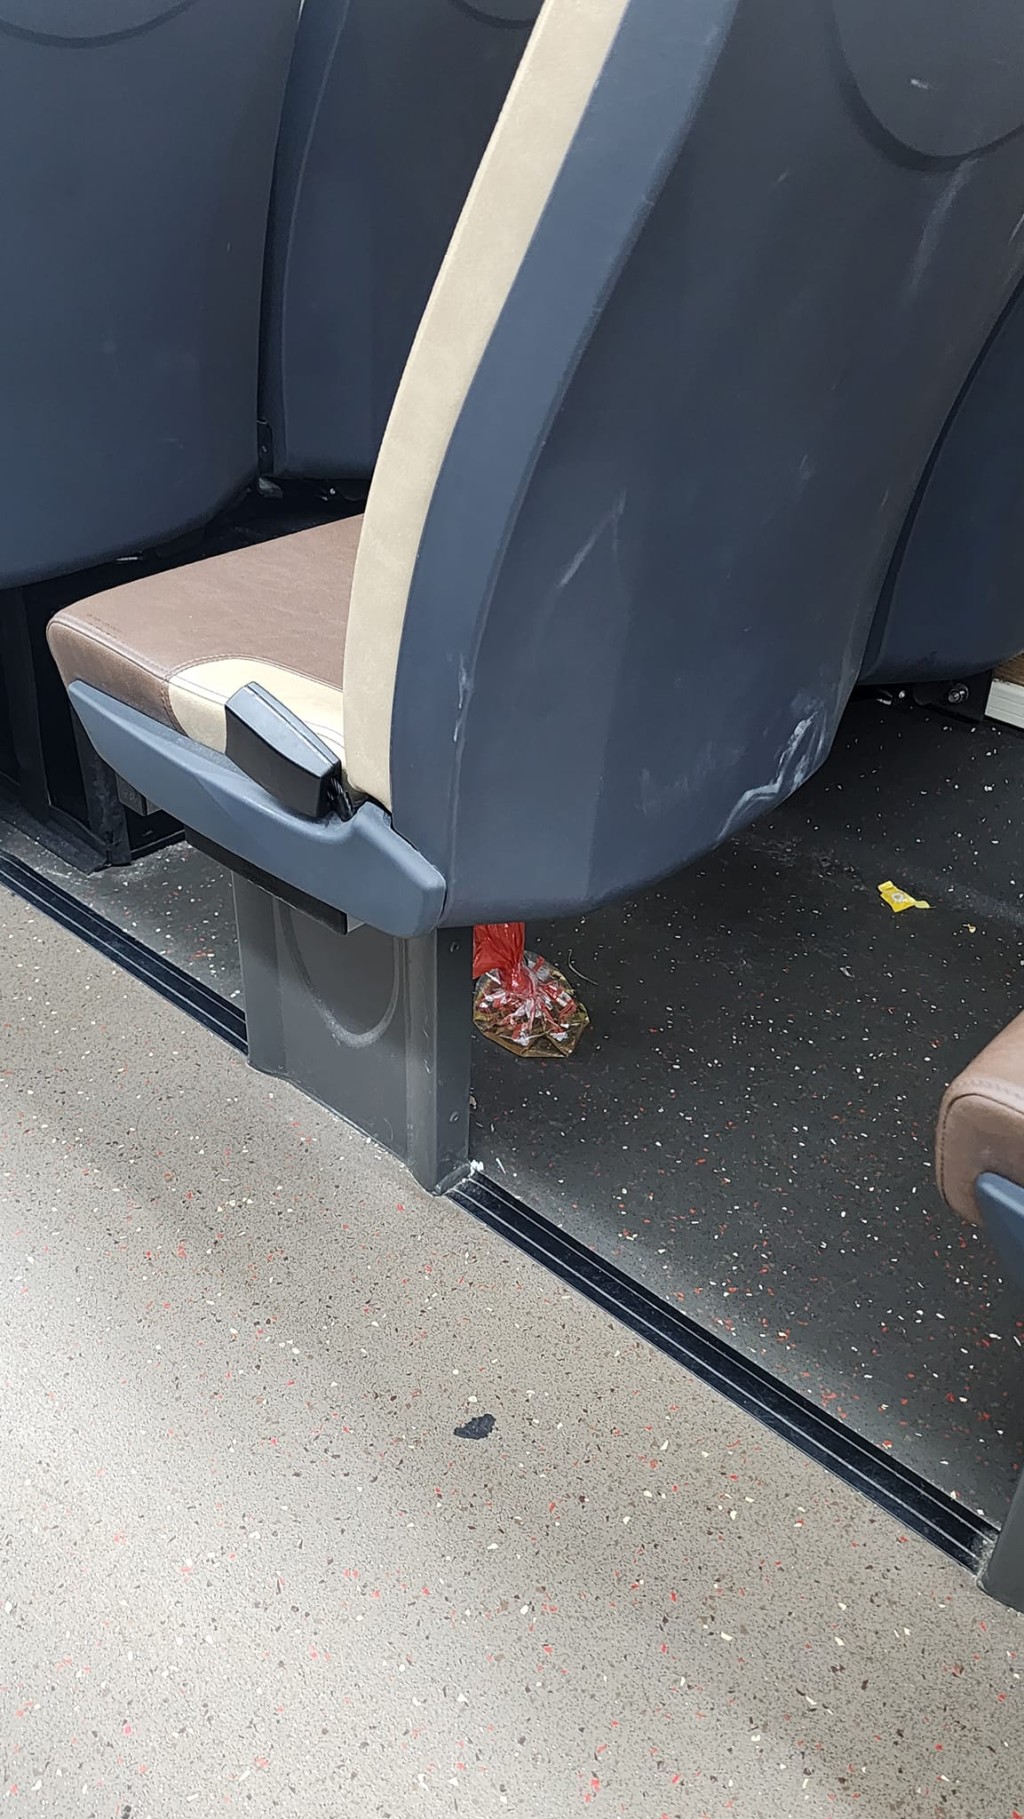 巴士椅子下有一個晶瑩剔透的膠袋。網圖